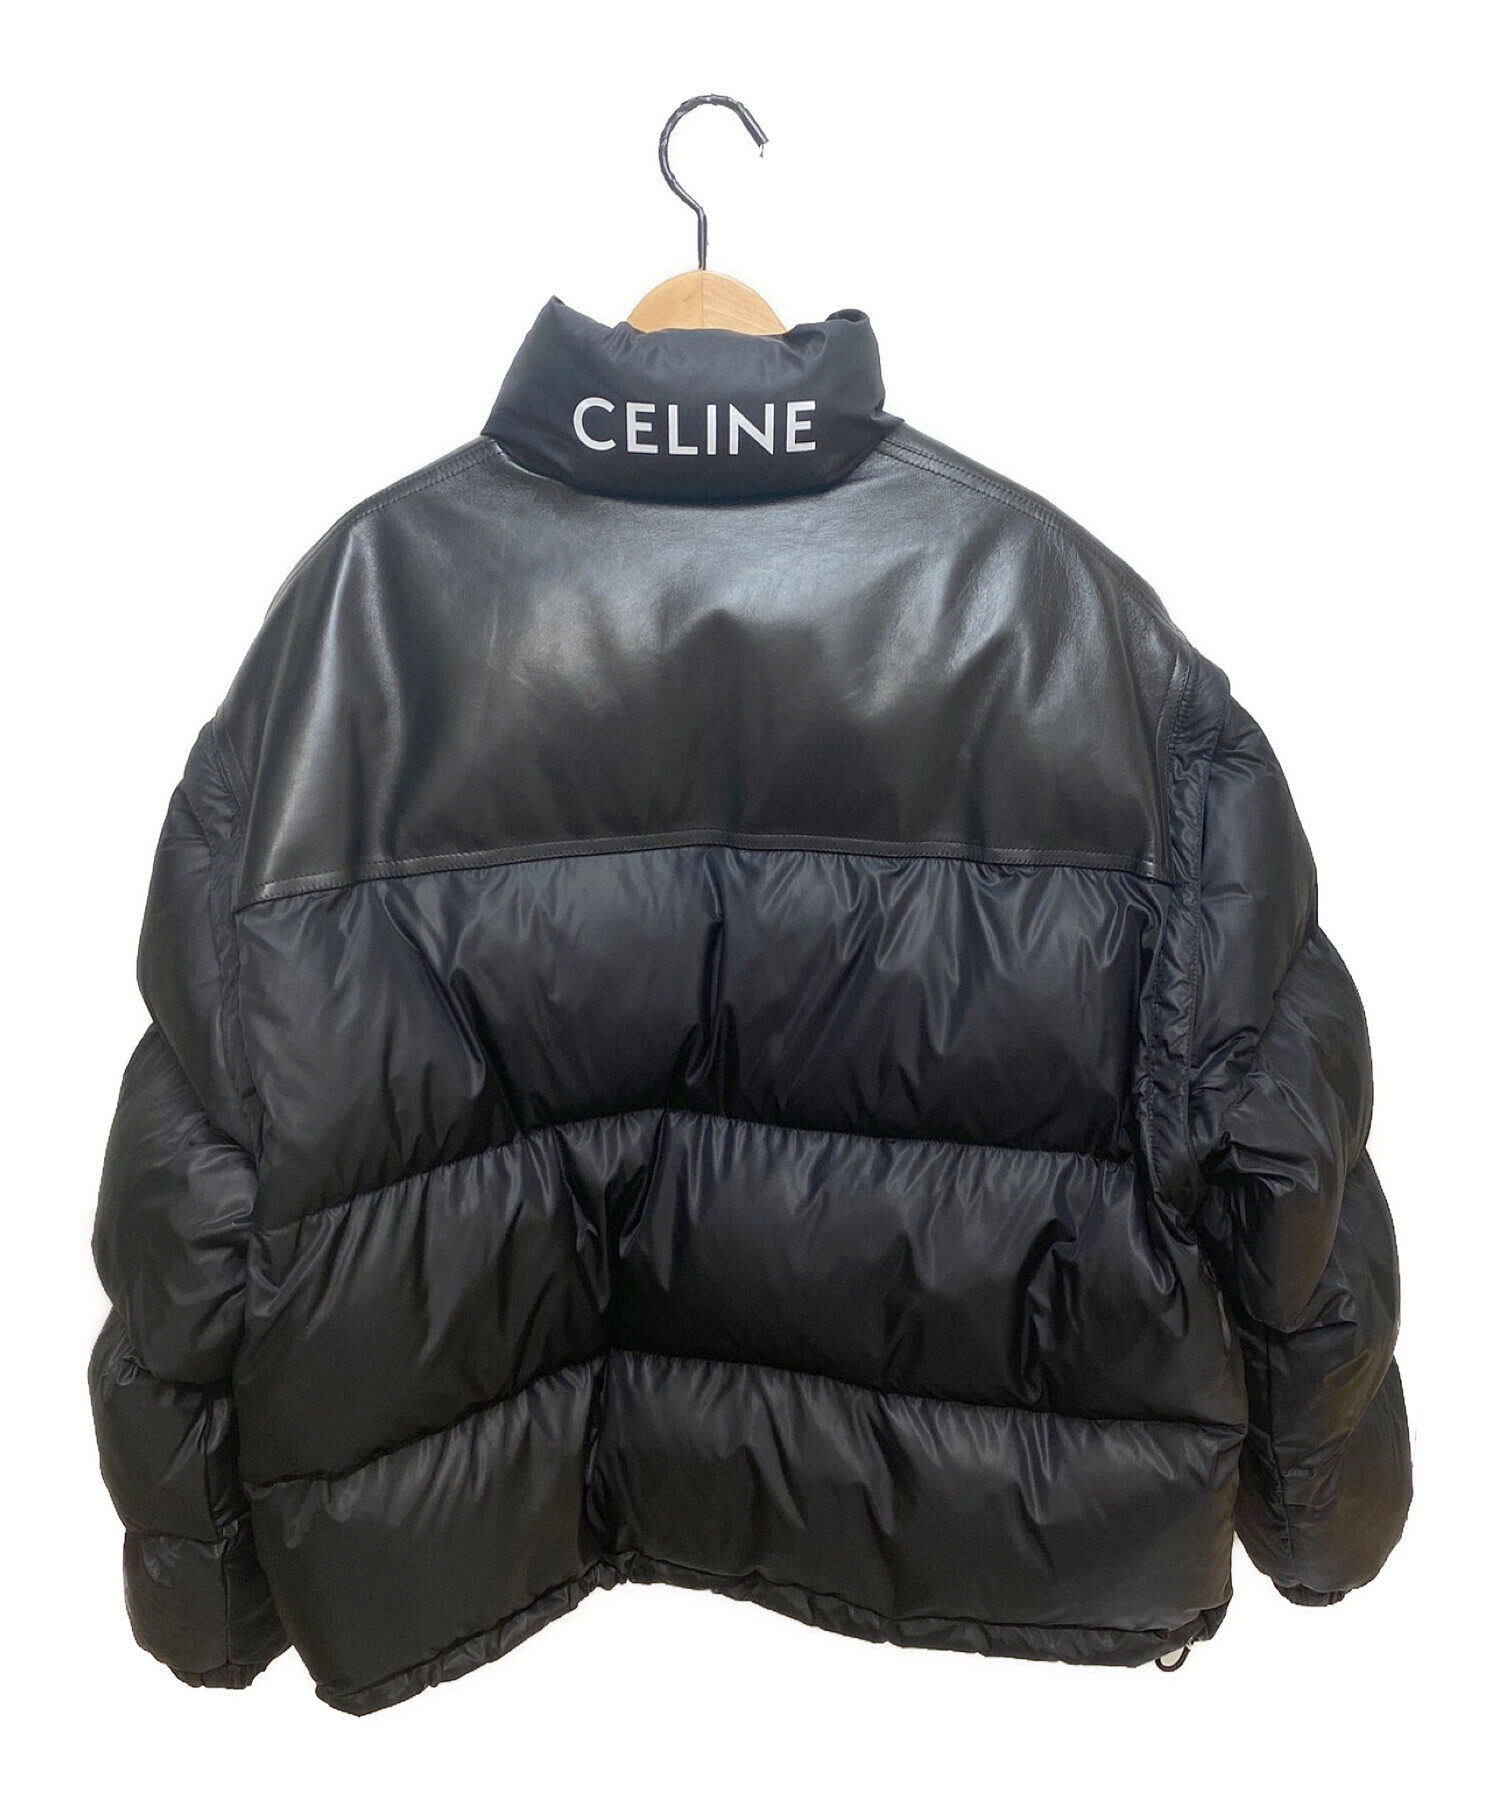 CELINE (セリーヌ) 21AW ルーズジャケット / 軽量マットナイロン ブラック サイズ:46